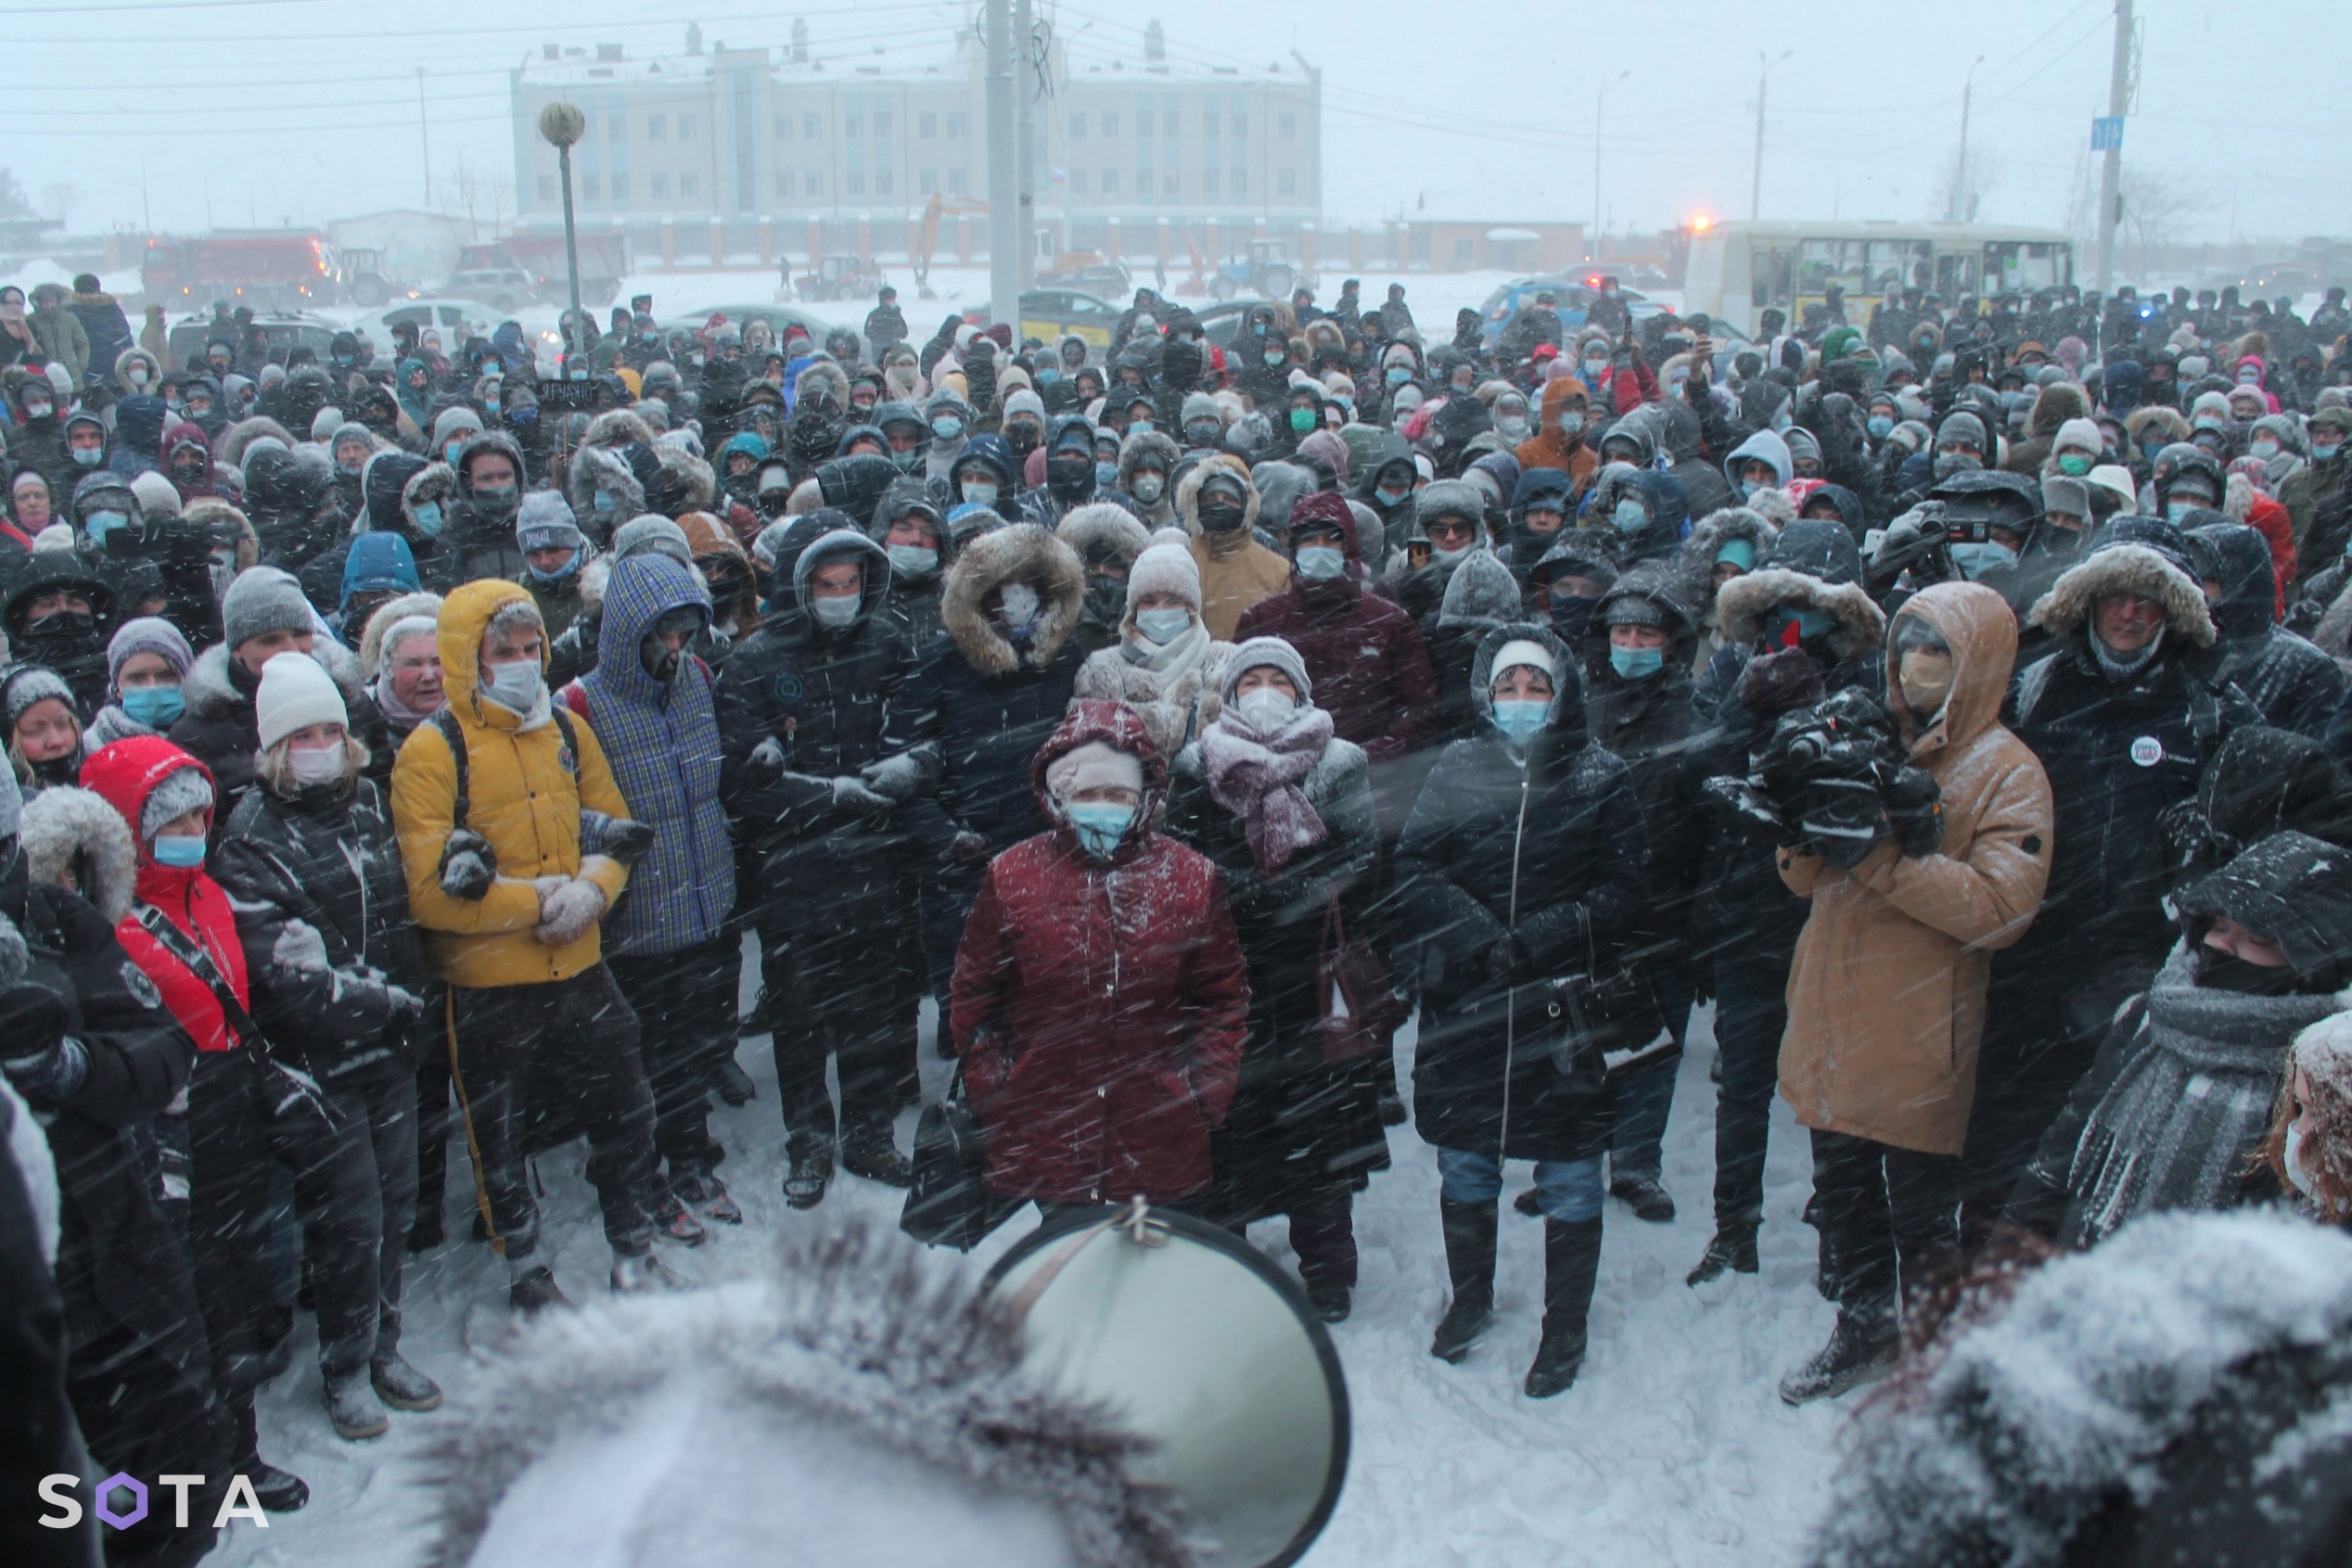 Акция в поддержку Навального в Архангельске, 23 января 2021 года.
Александр Песков / SOTA